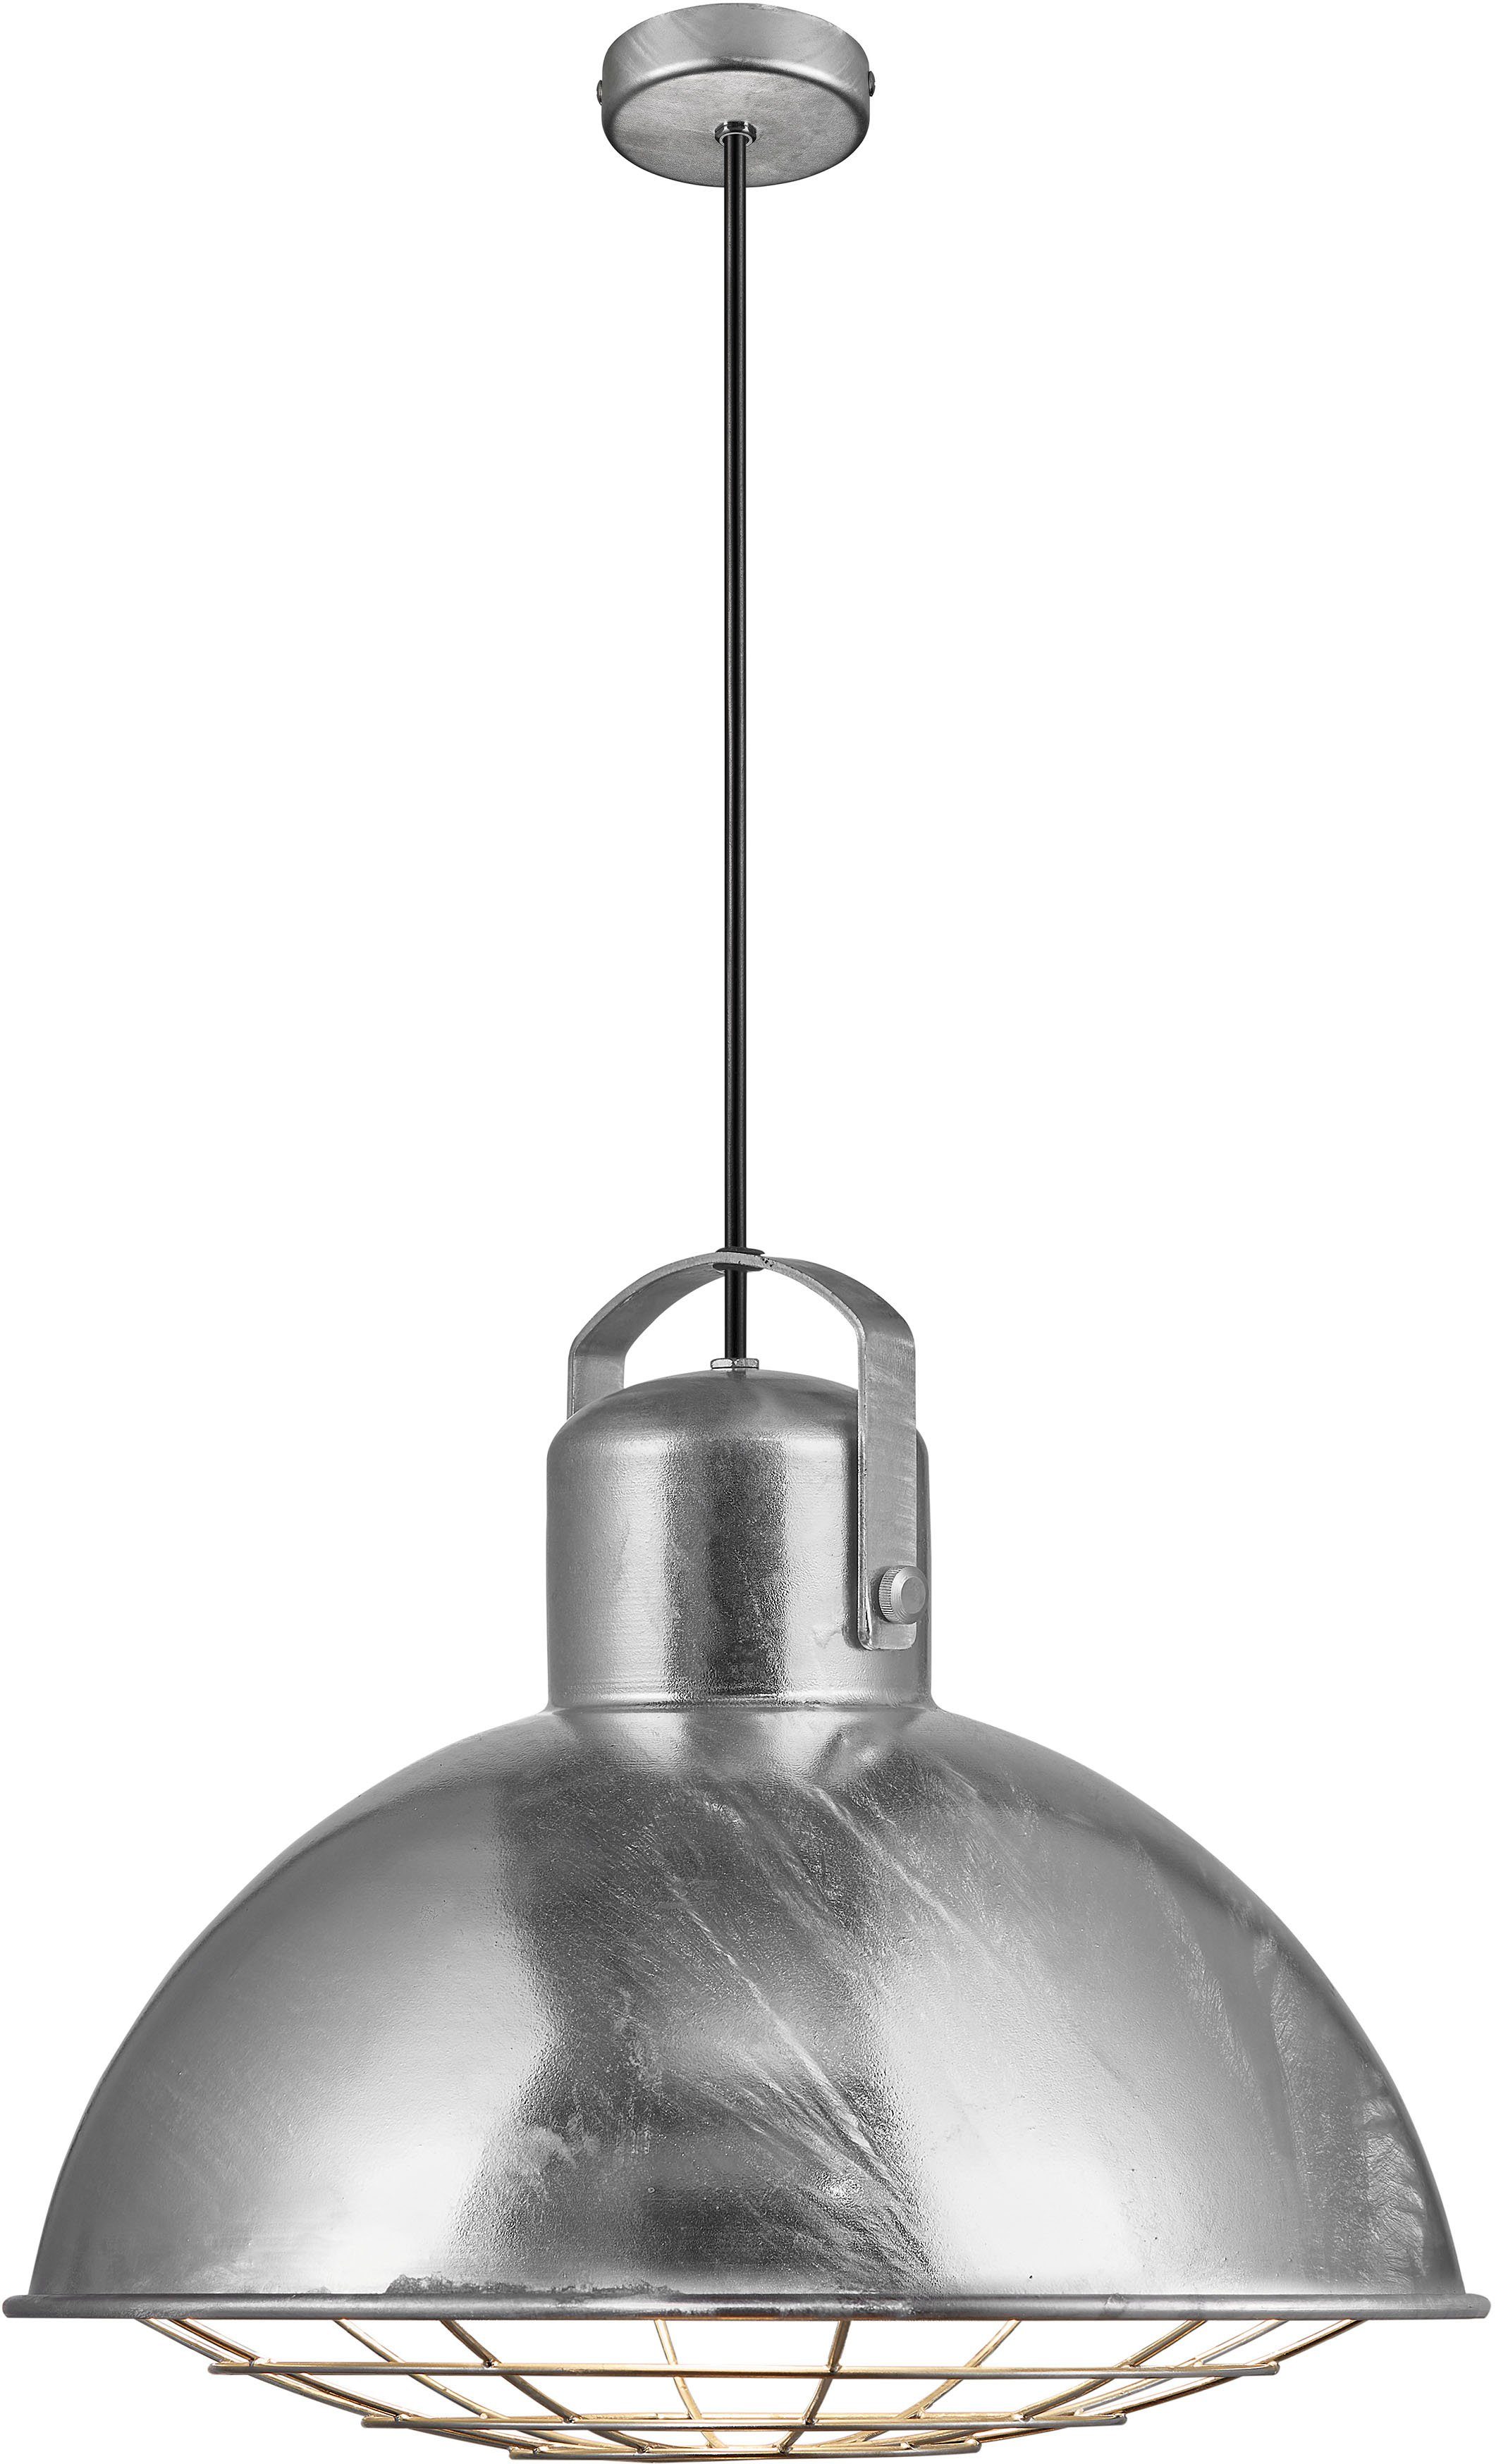 Nordlux Pendelleuchte Porter, ohne bedeckt, Gitter, Reihe in oder Cluster mehr das industrielles dekoratives einer die Lampen Design, zusammenhängen Drei oder einem Öffnung Leuchtmittel